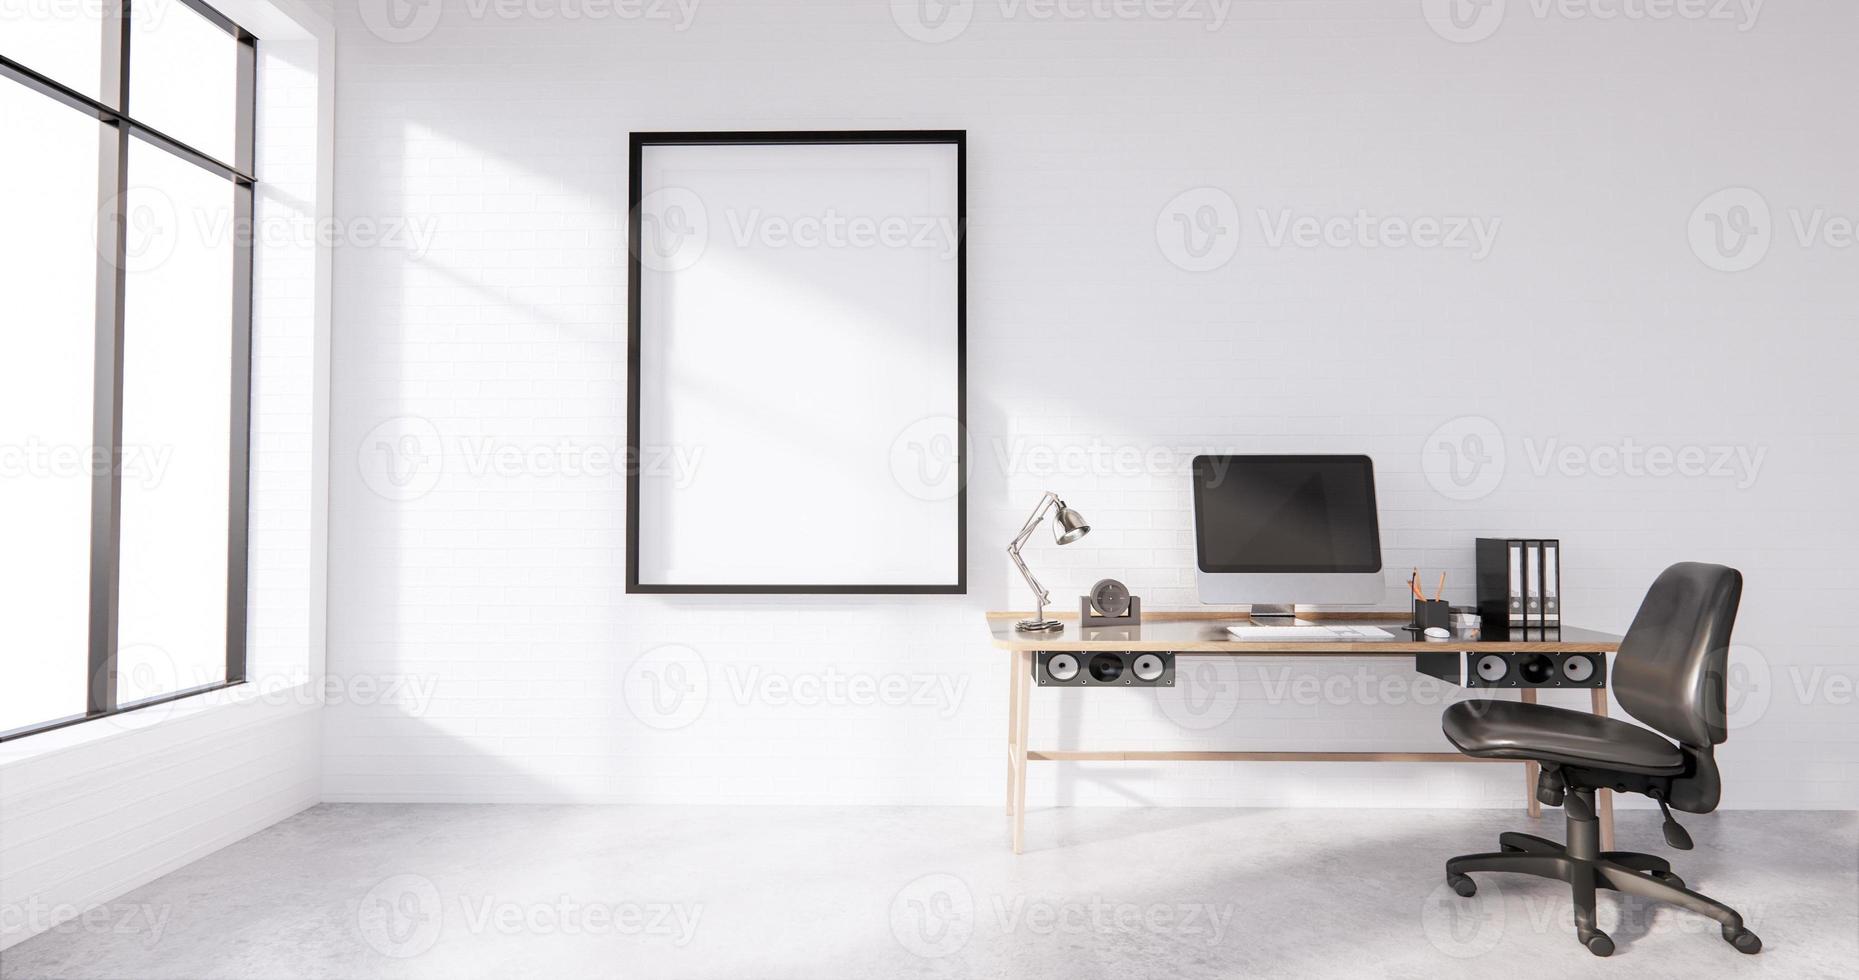 Die Innencomputer- und Bürowerkzeuge auf dem Mini-Schreibtisch in weißem Betonboden und weißem Backsteinwanddesign. 3D-Rendering foto